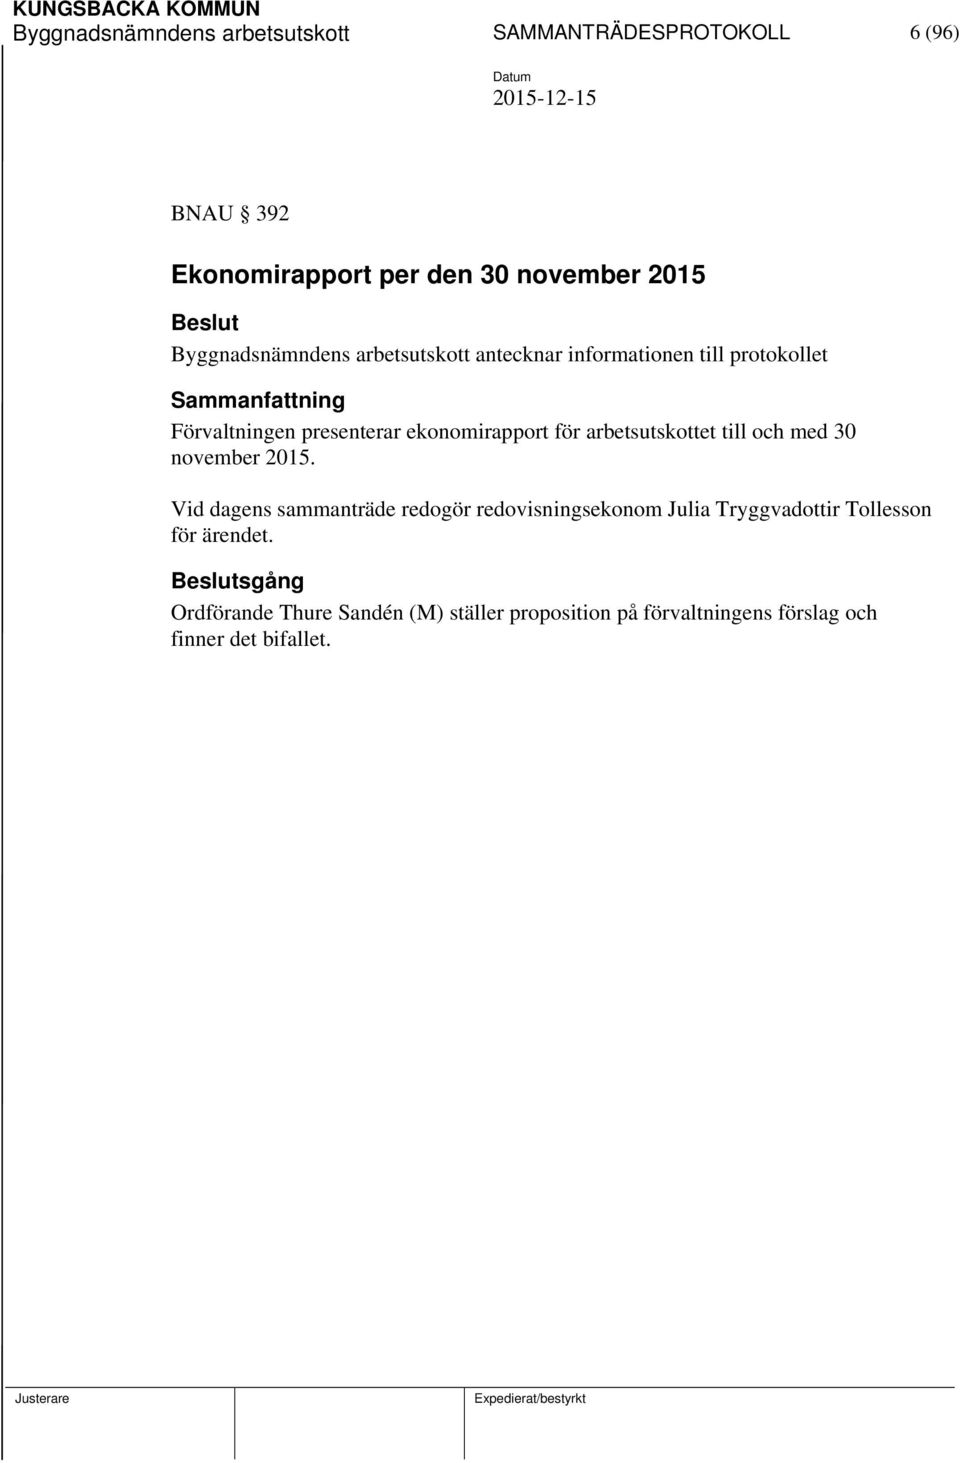 ekonomirapport för arbetsutskottet till och med 30 november 2015.